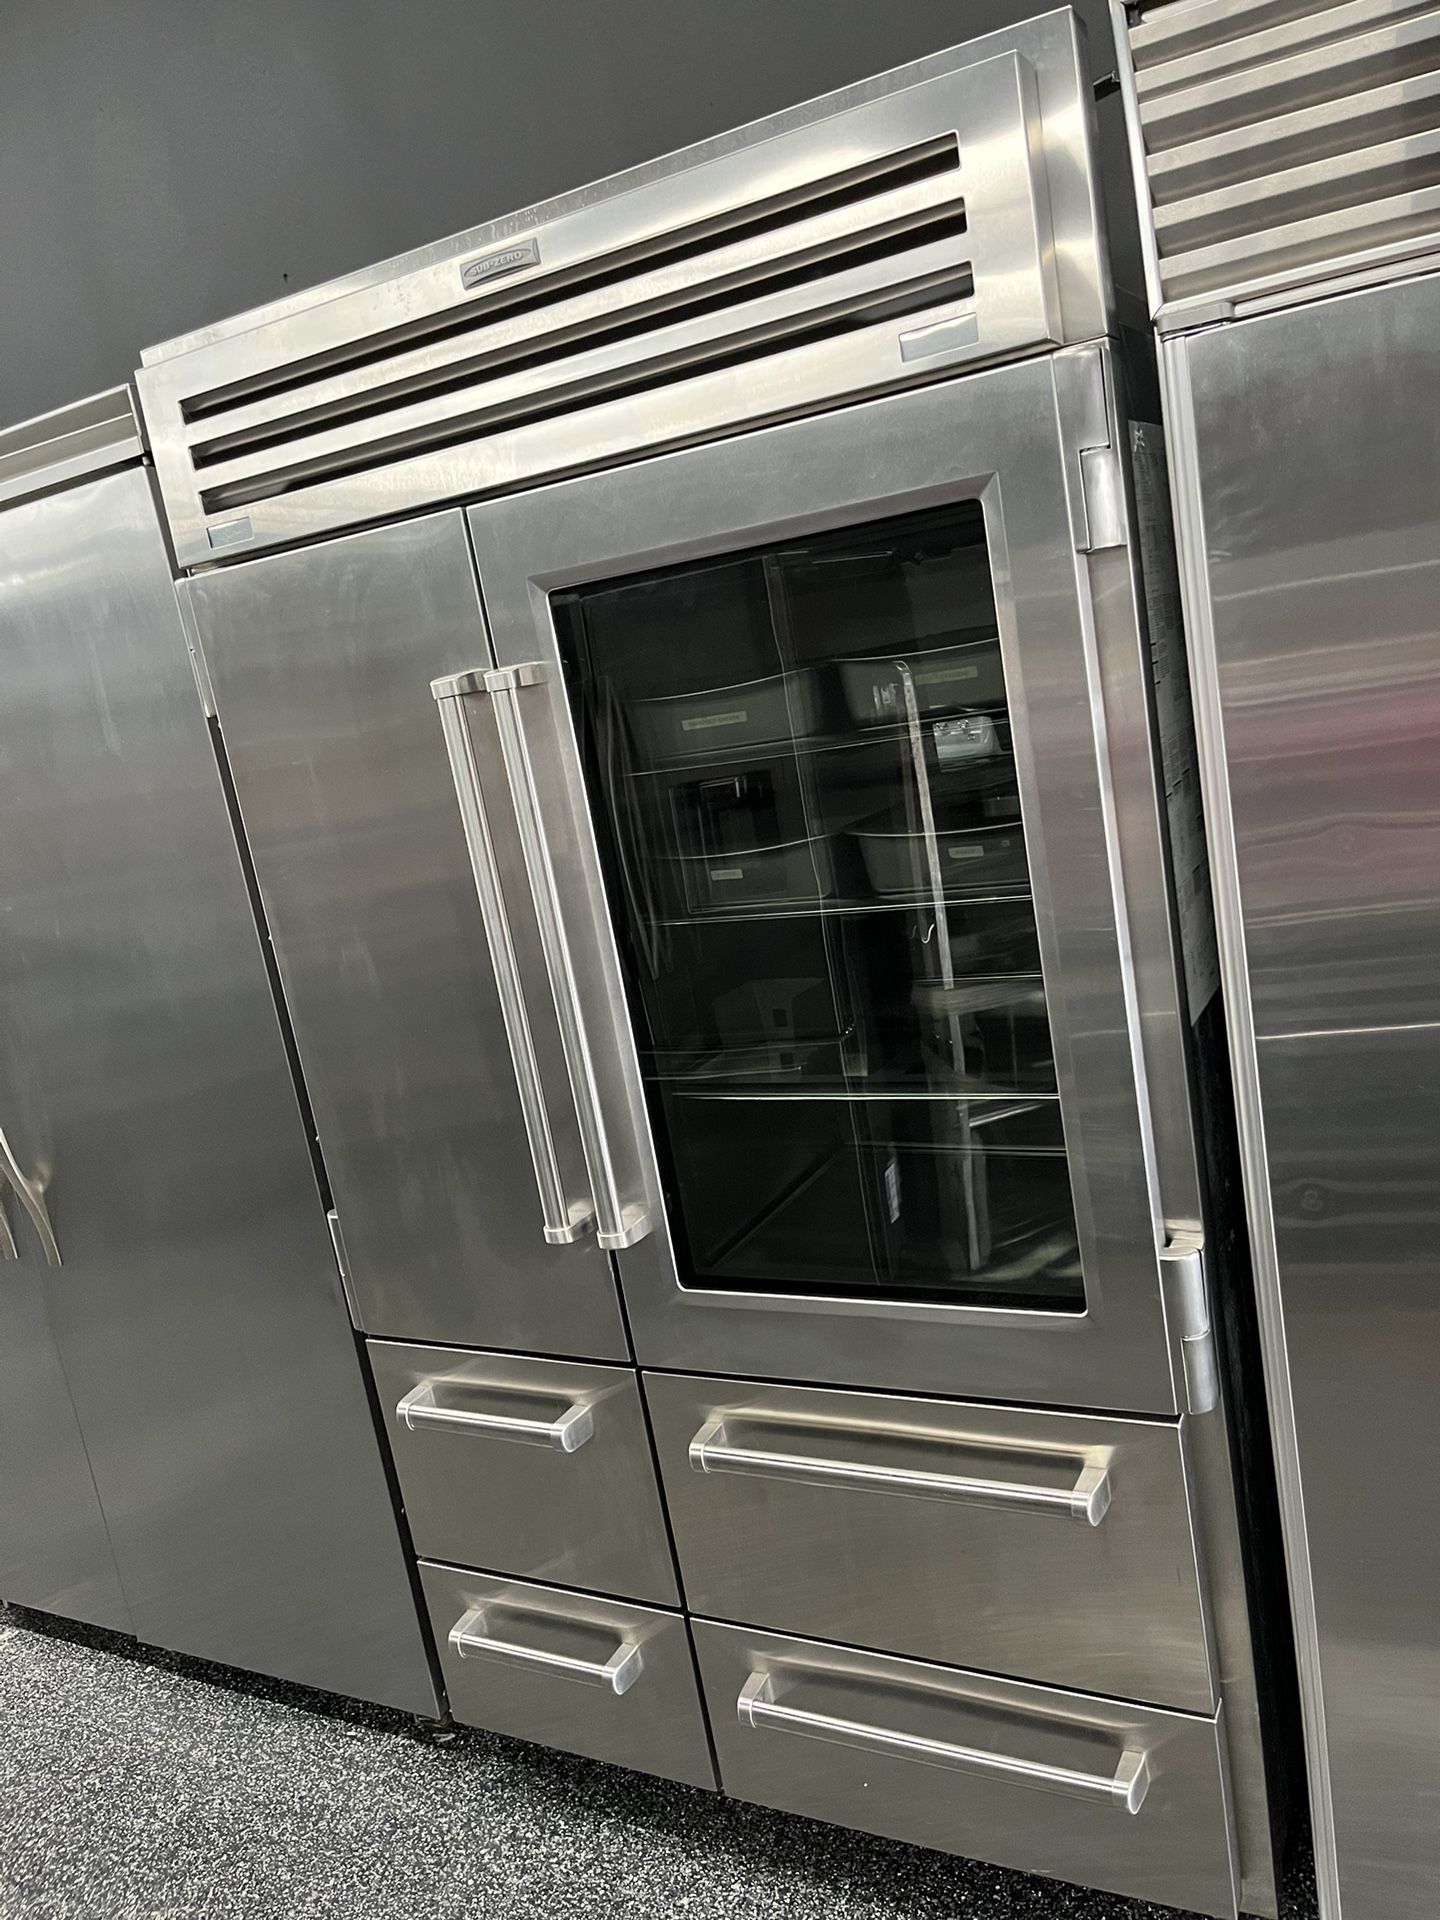 Sub Zero Pro Built In 48” Refrigerator With Glass Door